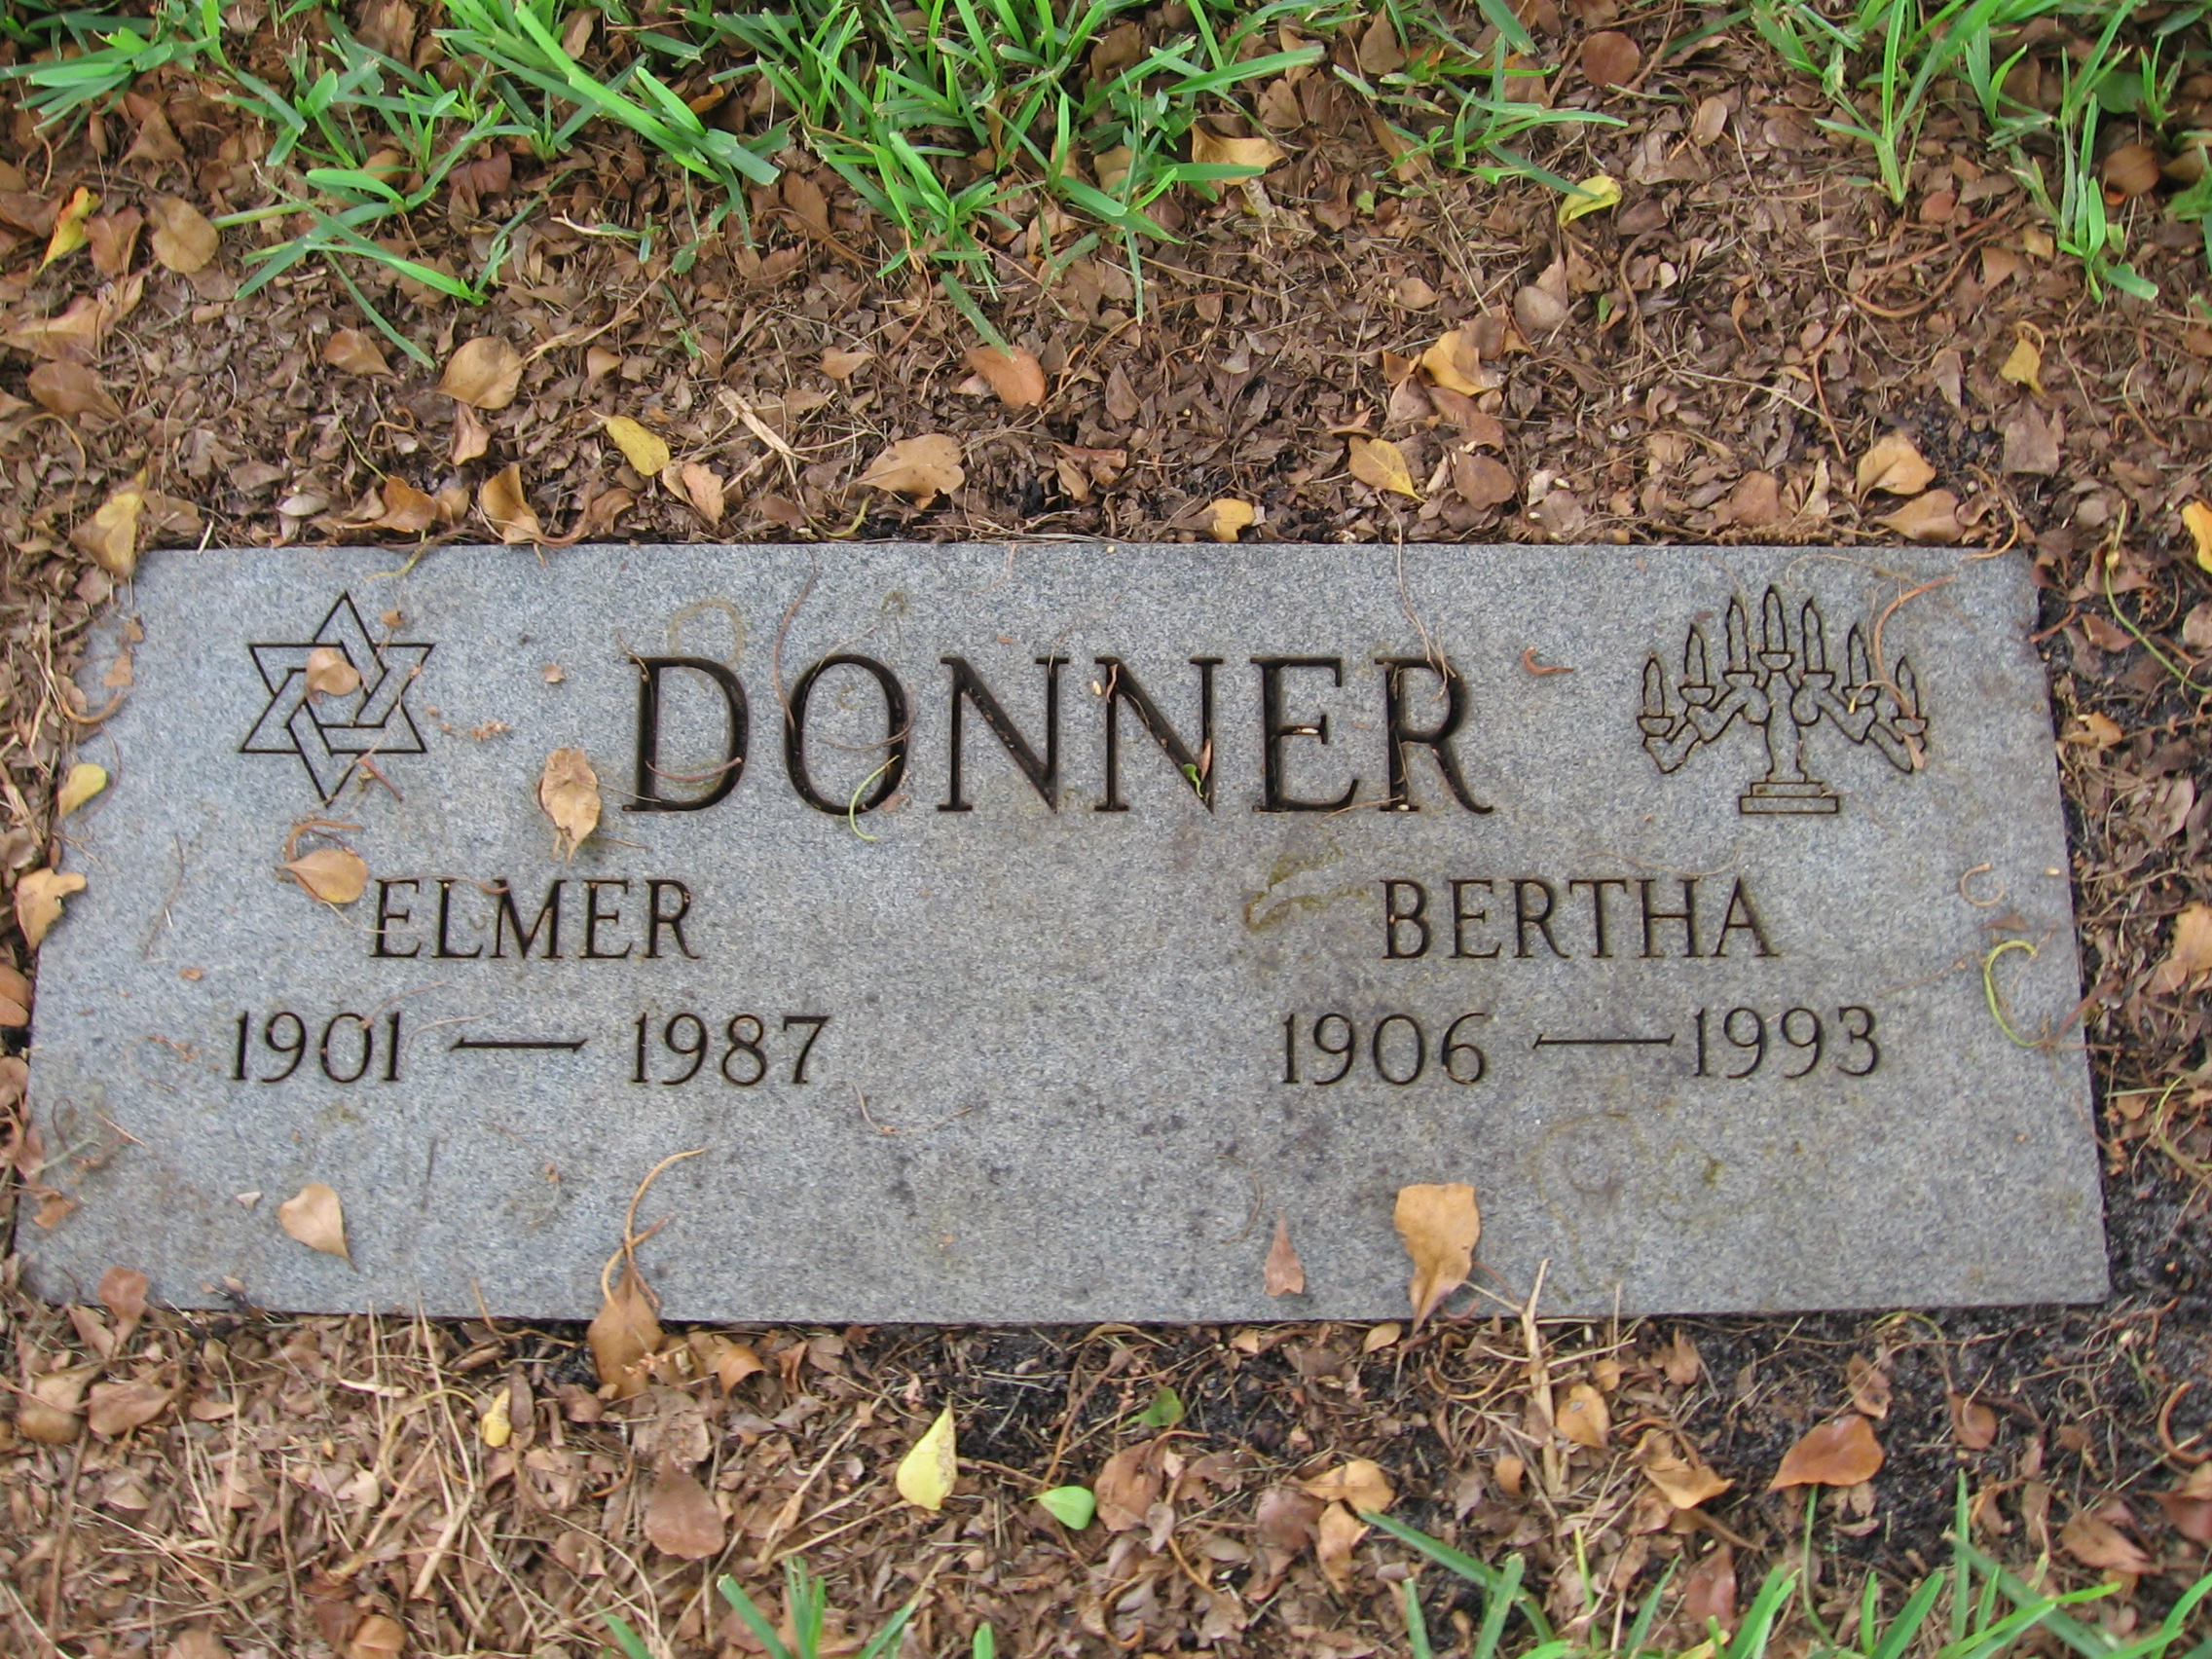 Elmer Donner